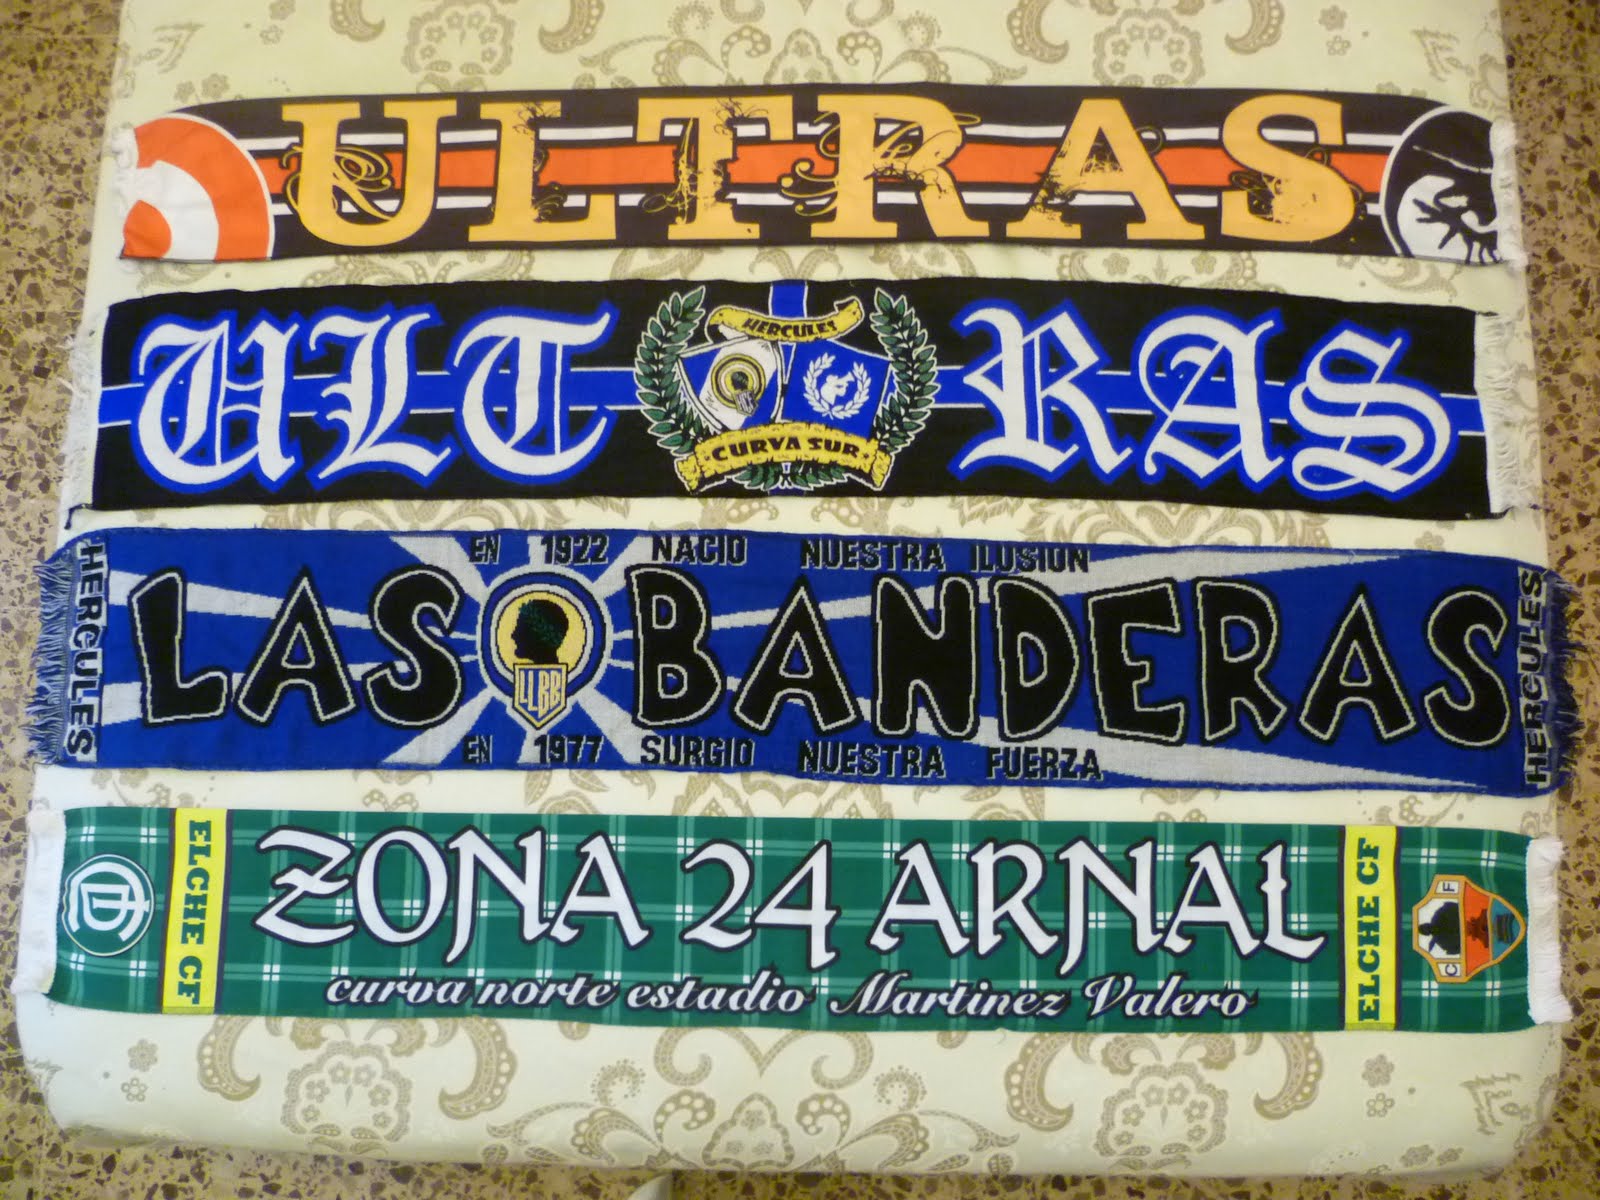 Ultras Murcia, Curva Sur, Las banderas y Zona 24 Arnal.JPG